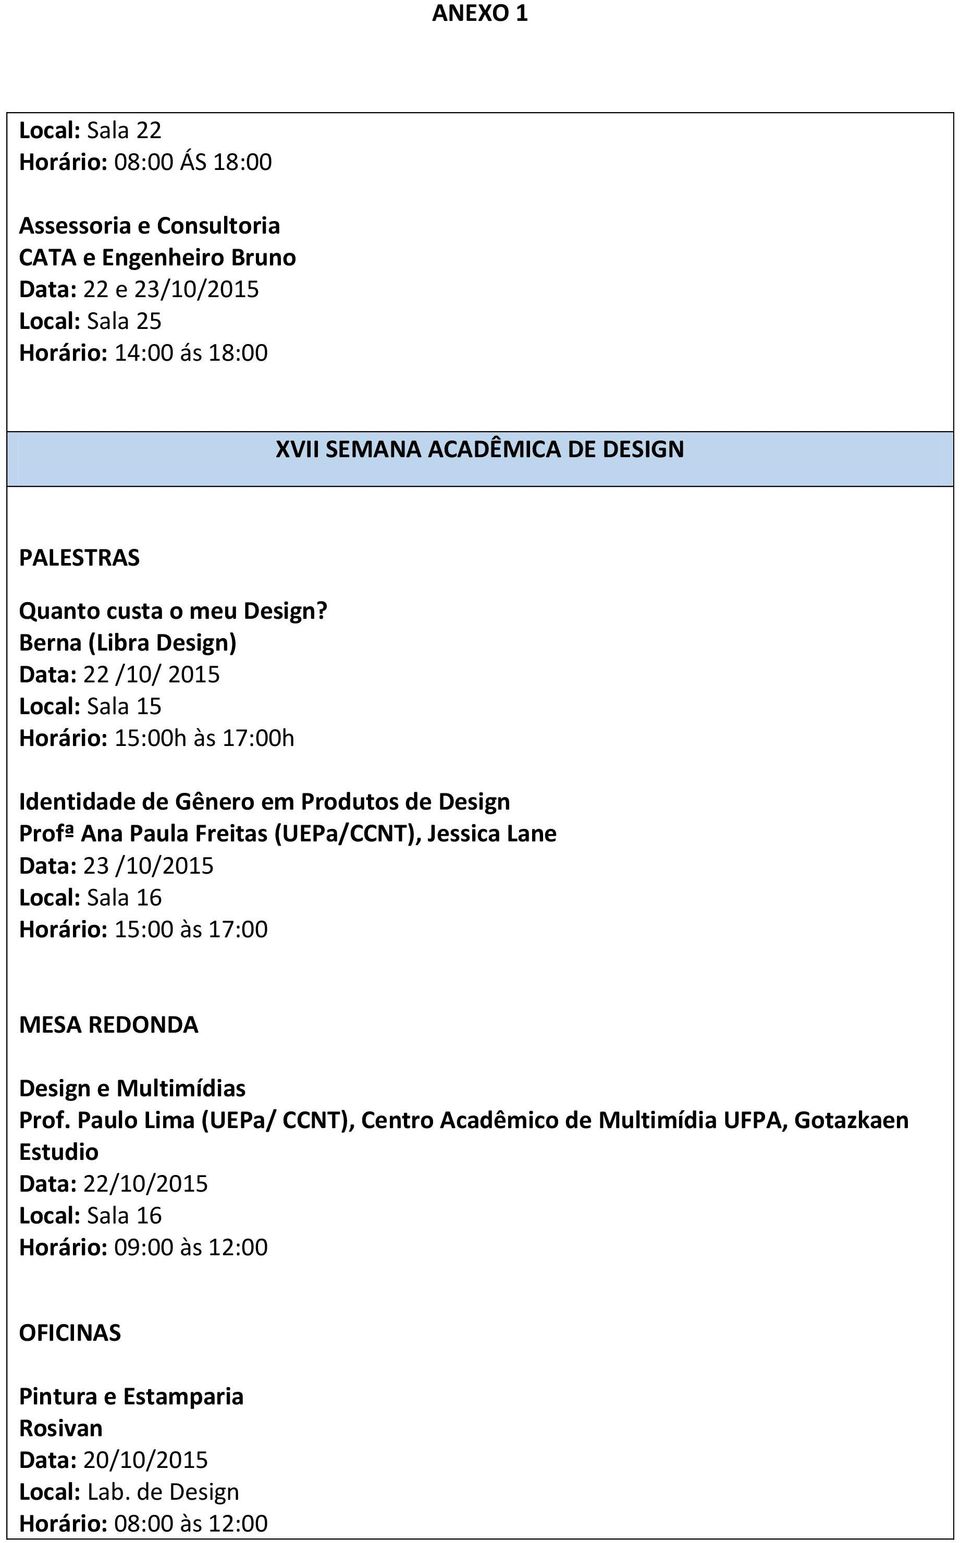 Berna (Libra Design) Data: 22 /10/ 2015 Local: Sala 15 Horário: 15:00h às 17:00h Identidade de Gênero em Produtos de Design Profª Ana Paula Freitas (UEPa/CCNT), Jessica